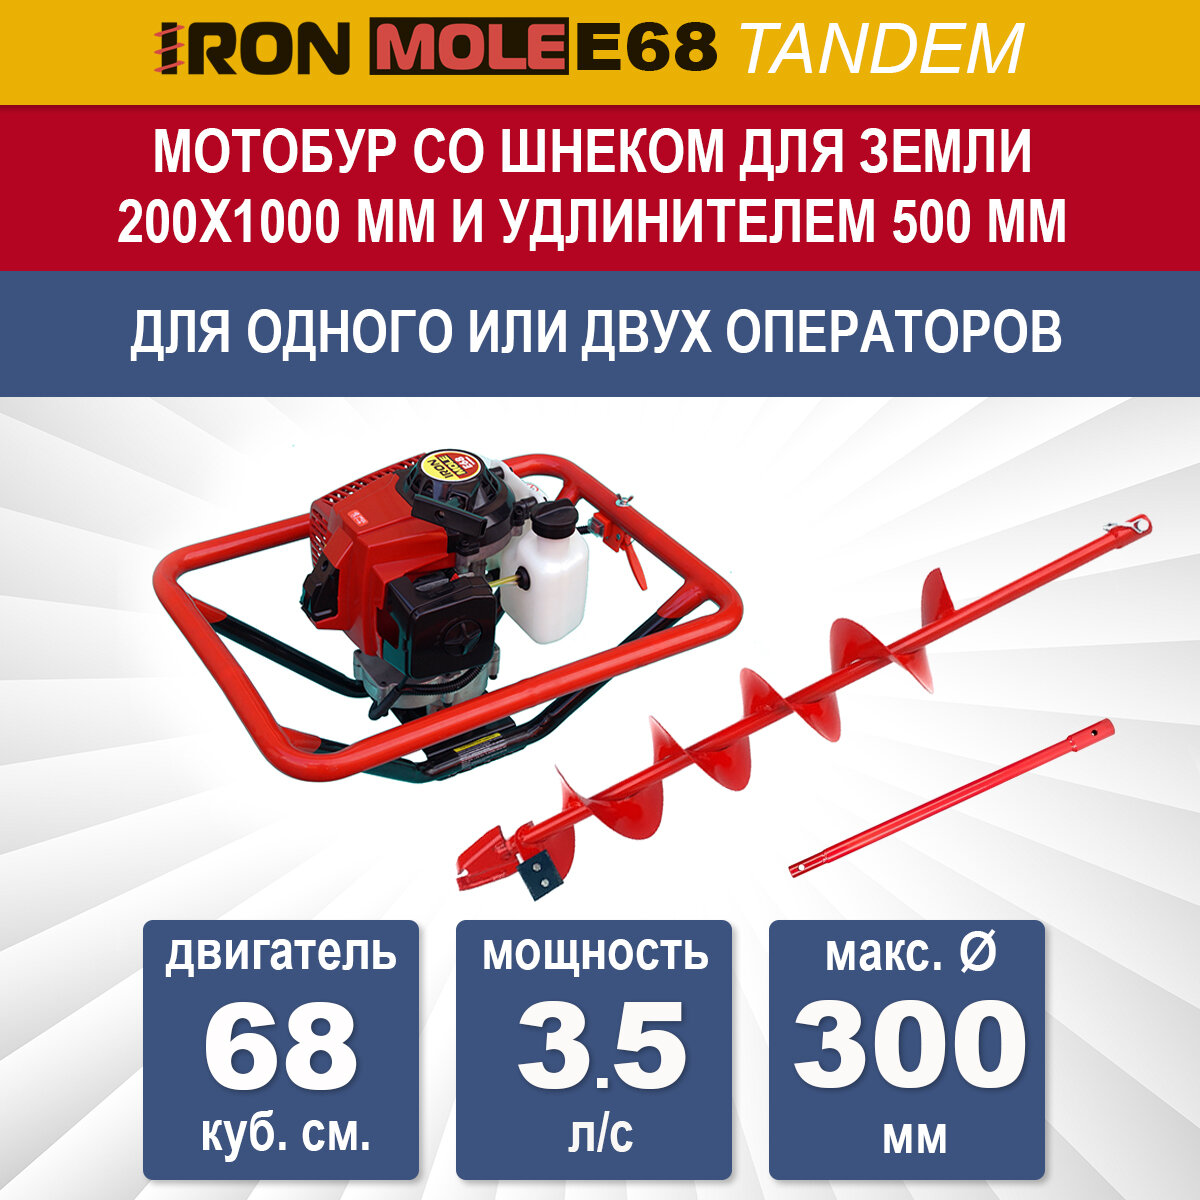 Бензиновый мотобур Iron Mole E68 со шнеком для земли N1 200Х1000 мм и удлинителем 500 мм, мощность 3.5 л/с, макс. диаметр 300 мм